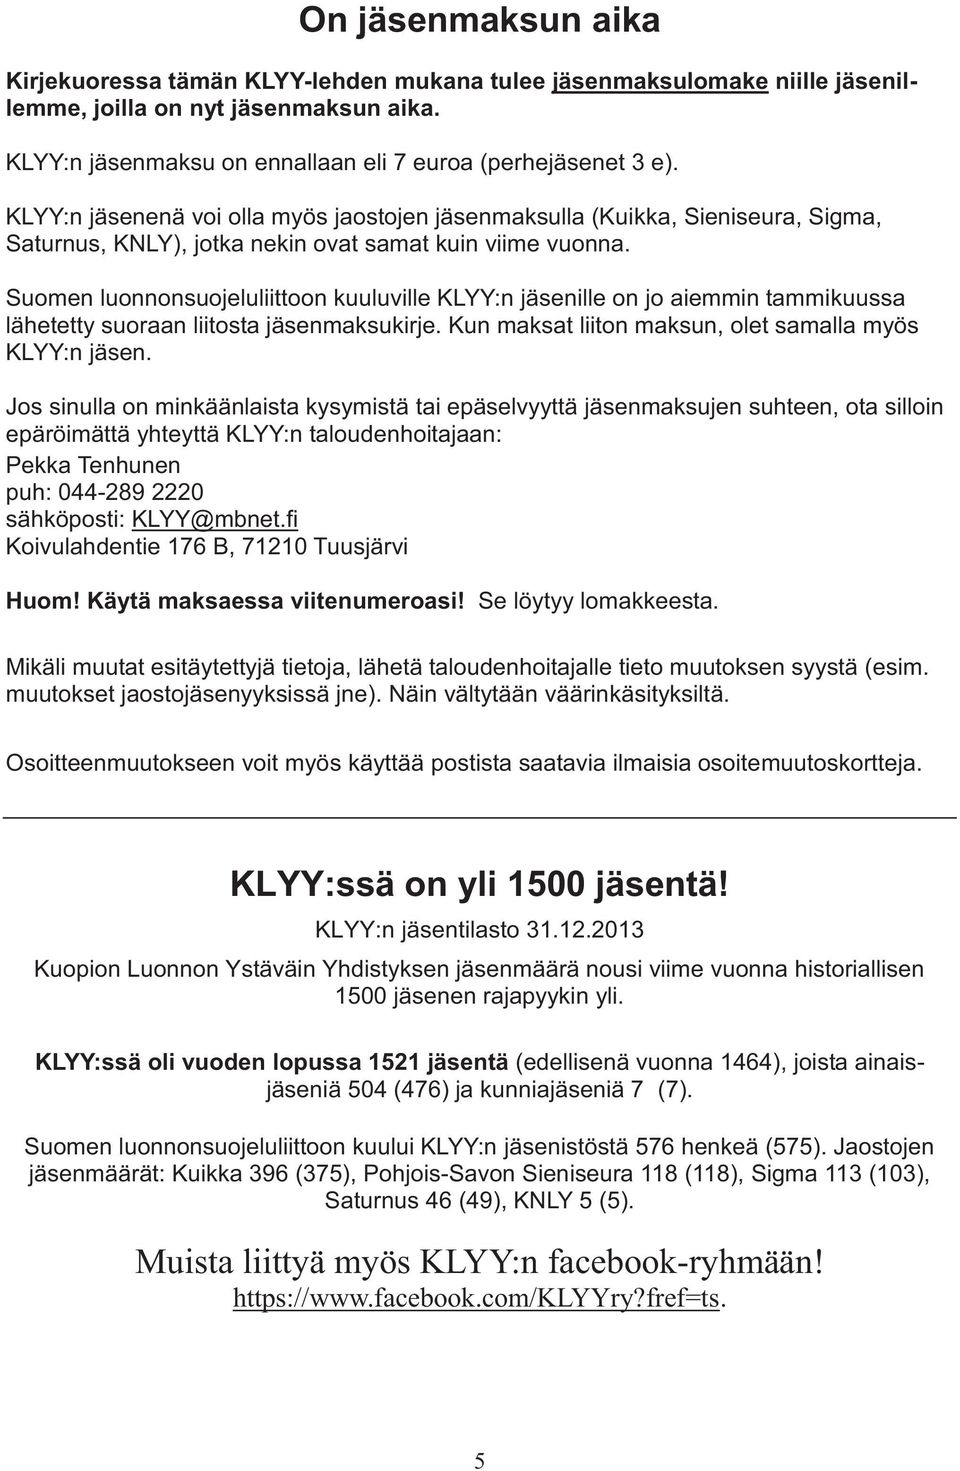 Suomen luonnonsuojeluliittoon kuuluville KLYY:n jäsenille on jo aiemmin tammikuussa lähetetty suoraan liitosta jäsenmaksukirje. Kun maksat liiton maksun, olet samalla myös KLYY:n jäsen.